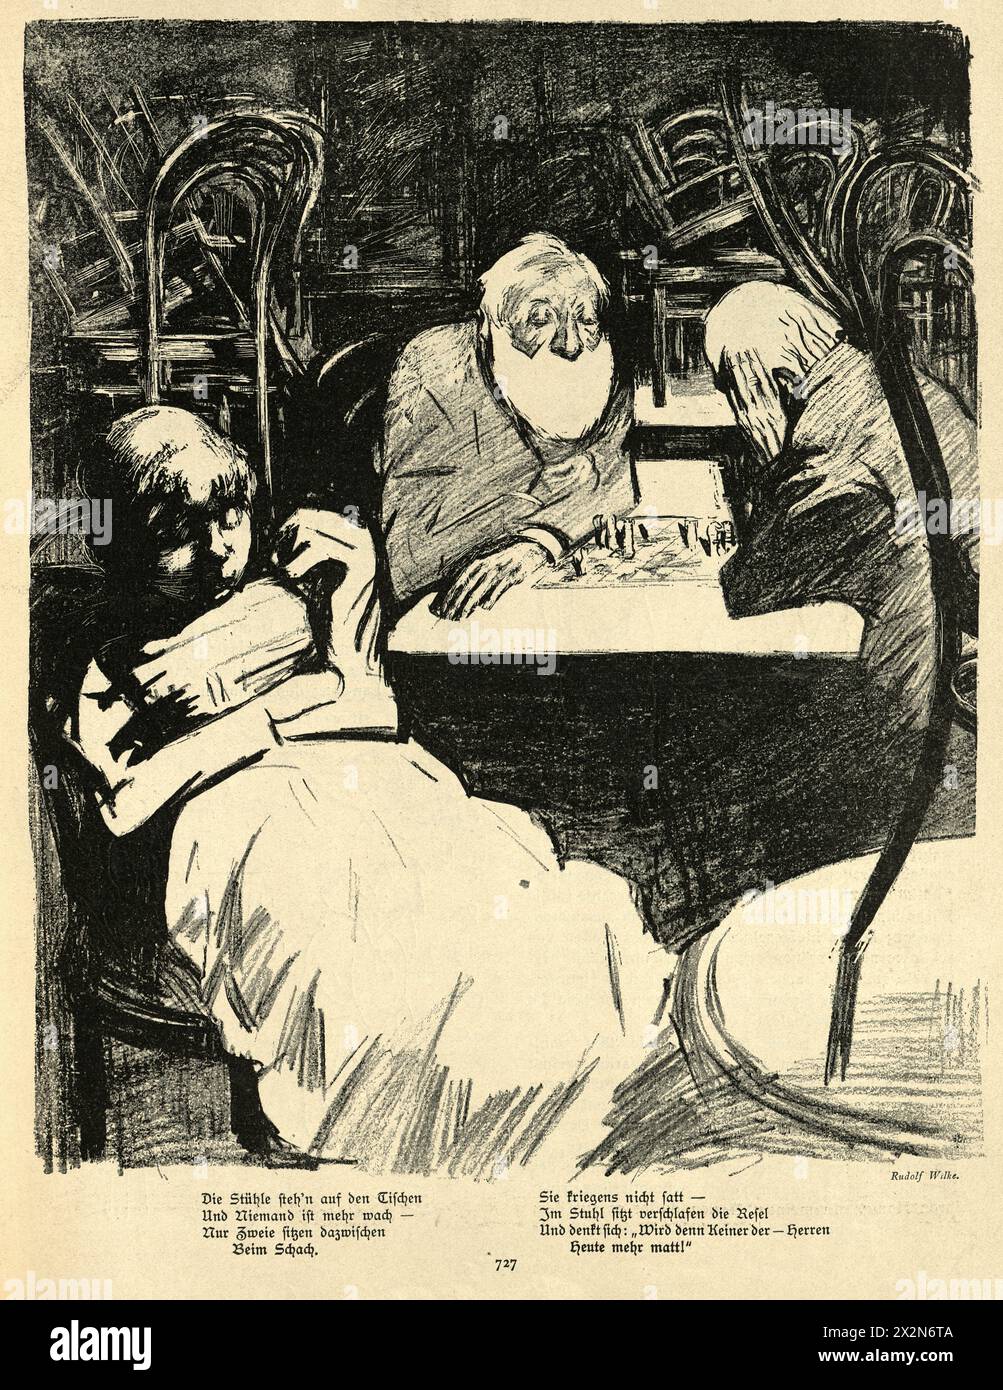 Vintage illustration femme ennuyée dormant, tandis que deux hommes jouent un jeu d'échecs, allemand, Jugendstil, Art Nouveau, années 1890, XIXe siècle Banque D'Images